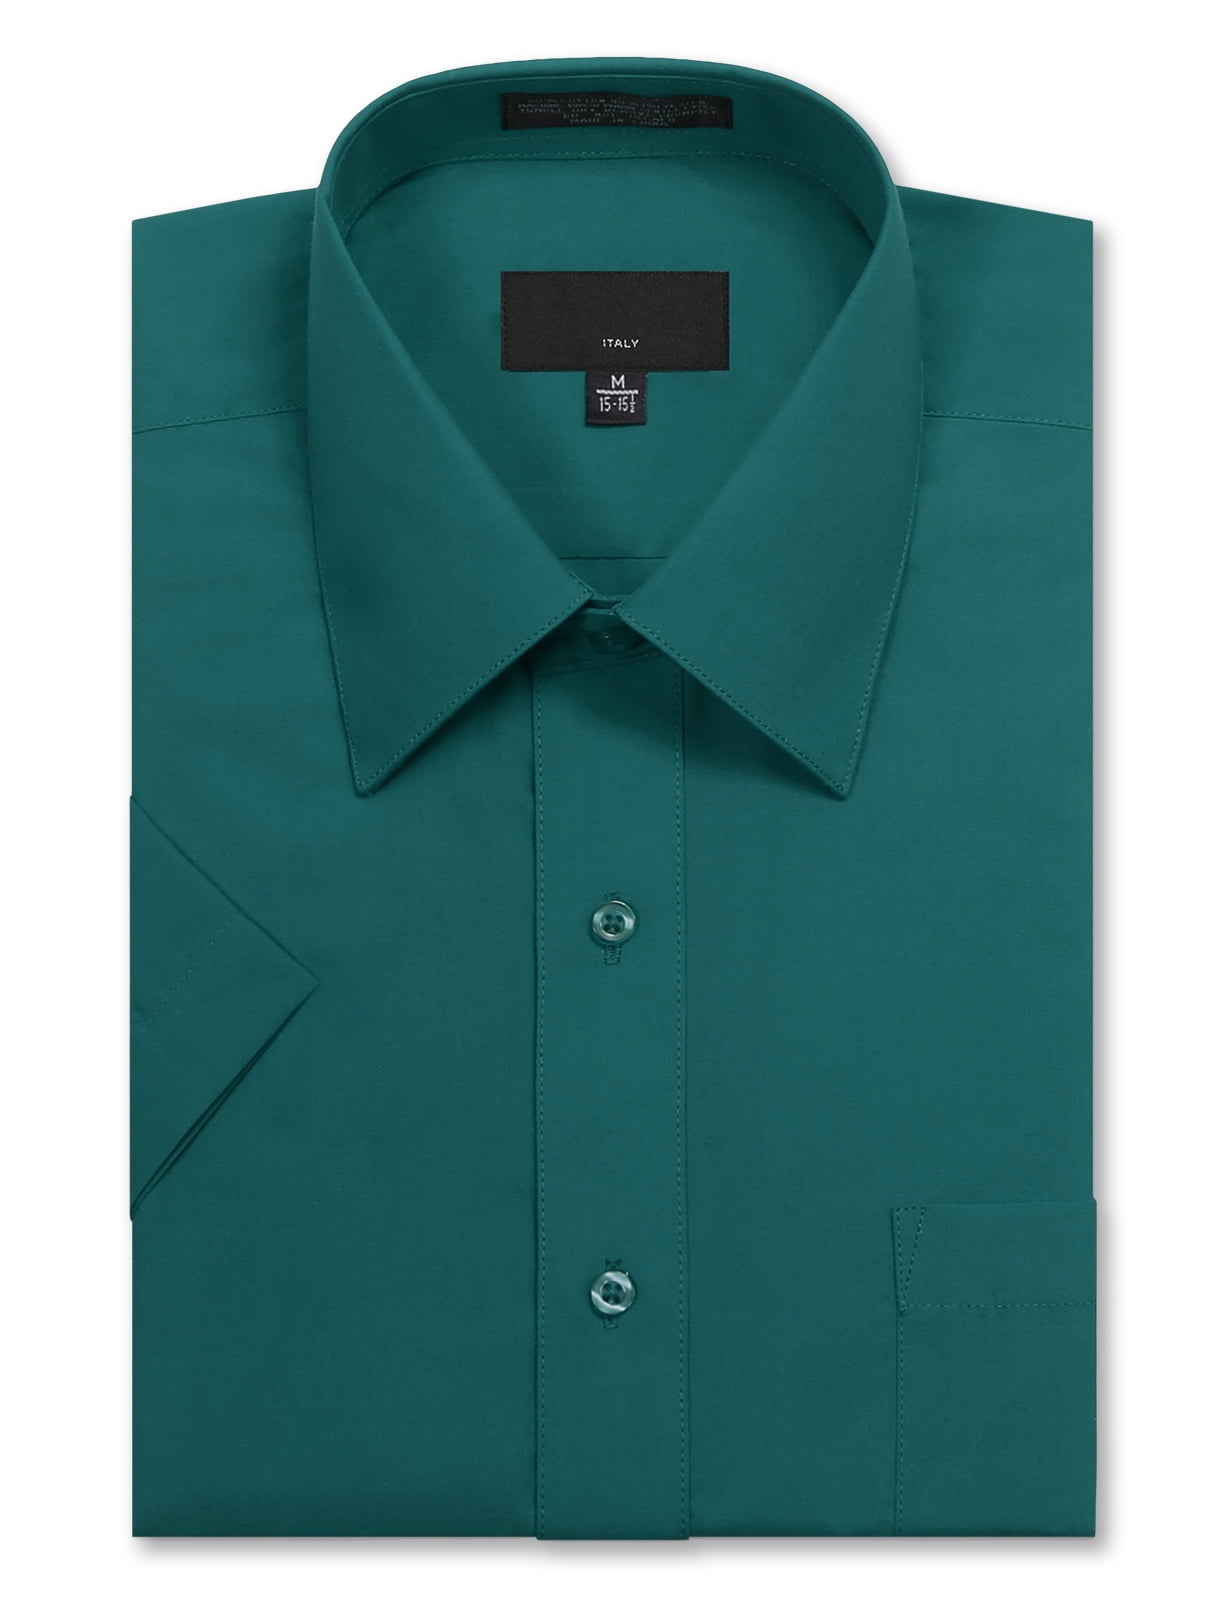 Allsense Men's Regular Fit Short-Sleeve Dress Shirts - Walmart.com